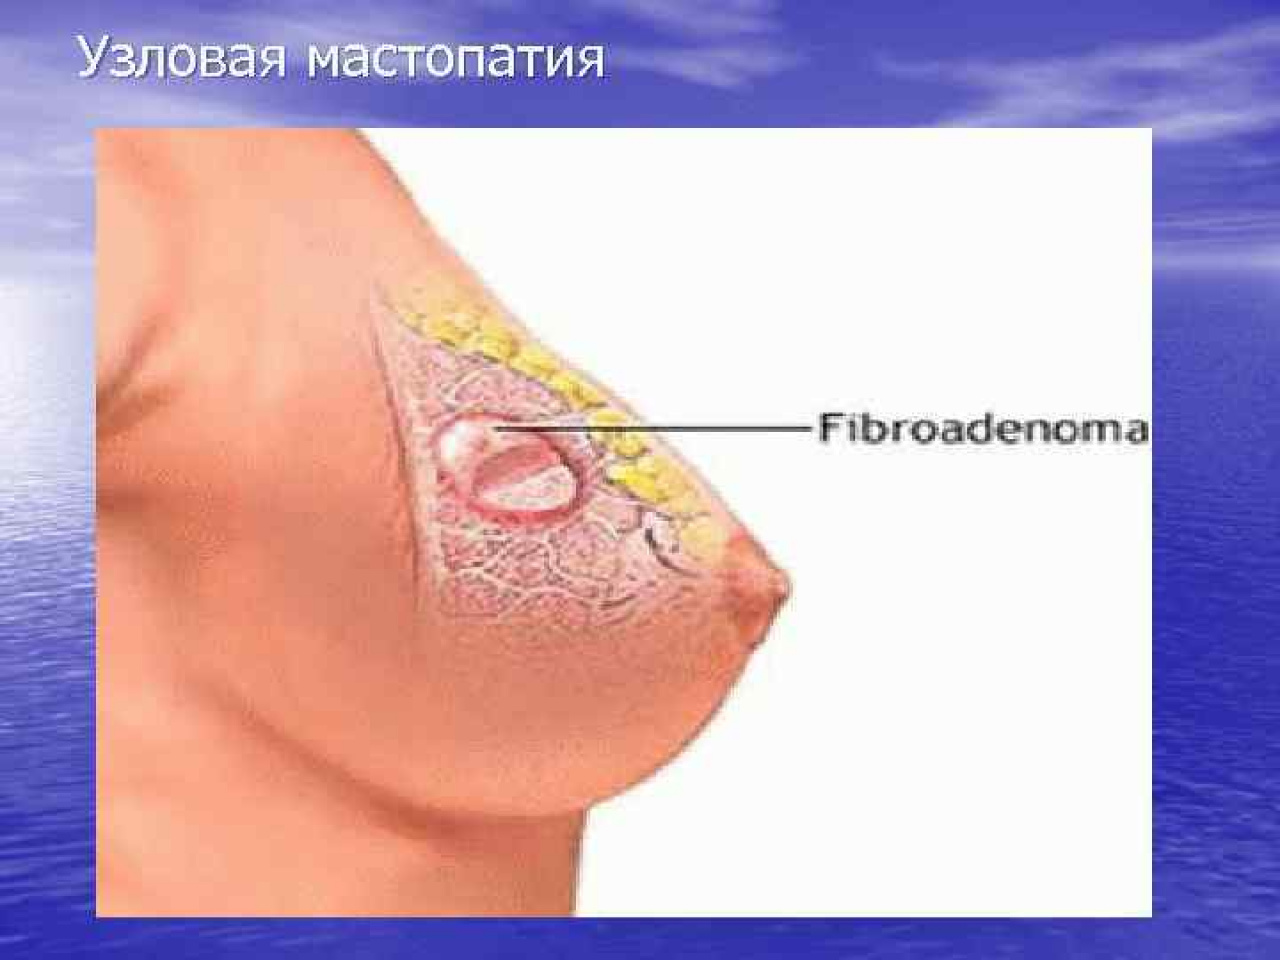 Кроме рака. Маммолог о симптомах других, не менее опасных, заболеваний груди  — Многопрофильная клиника Н.Березиной Ульяновск